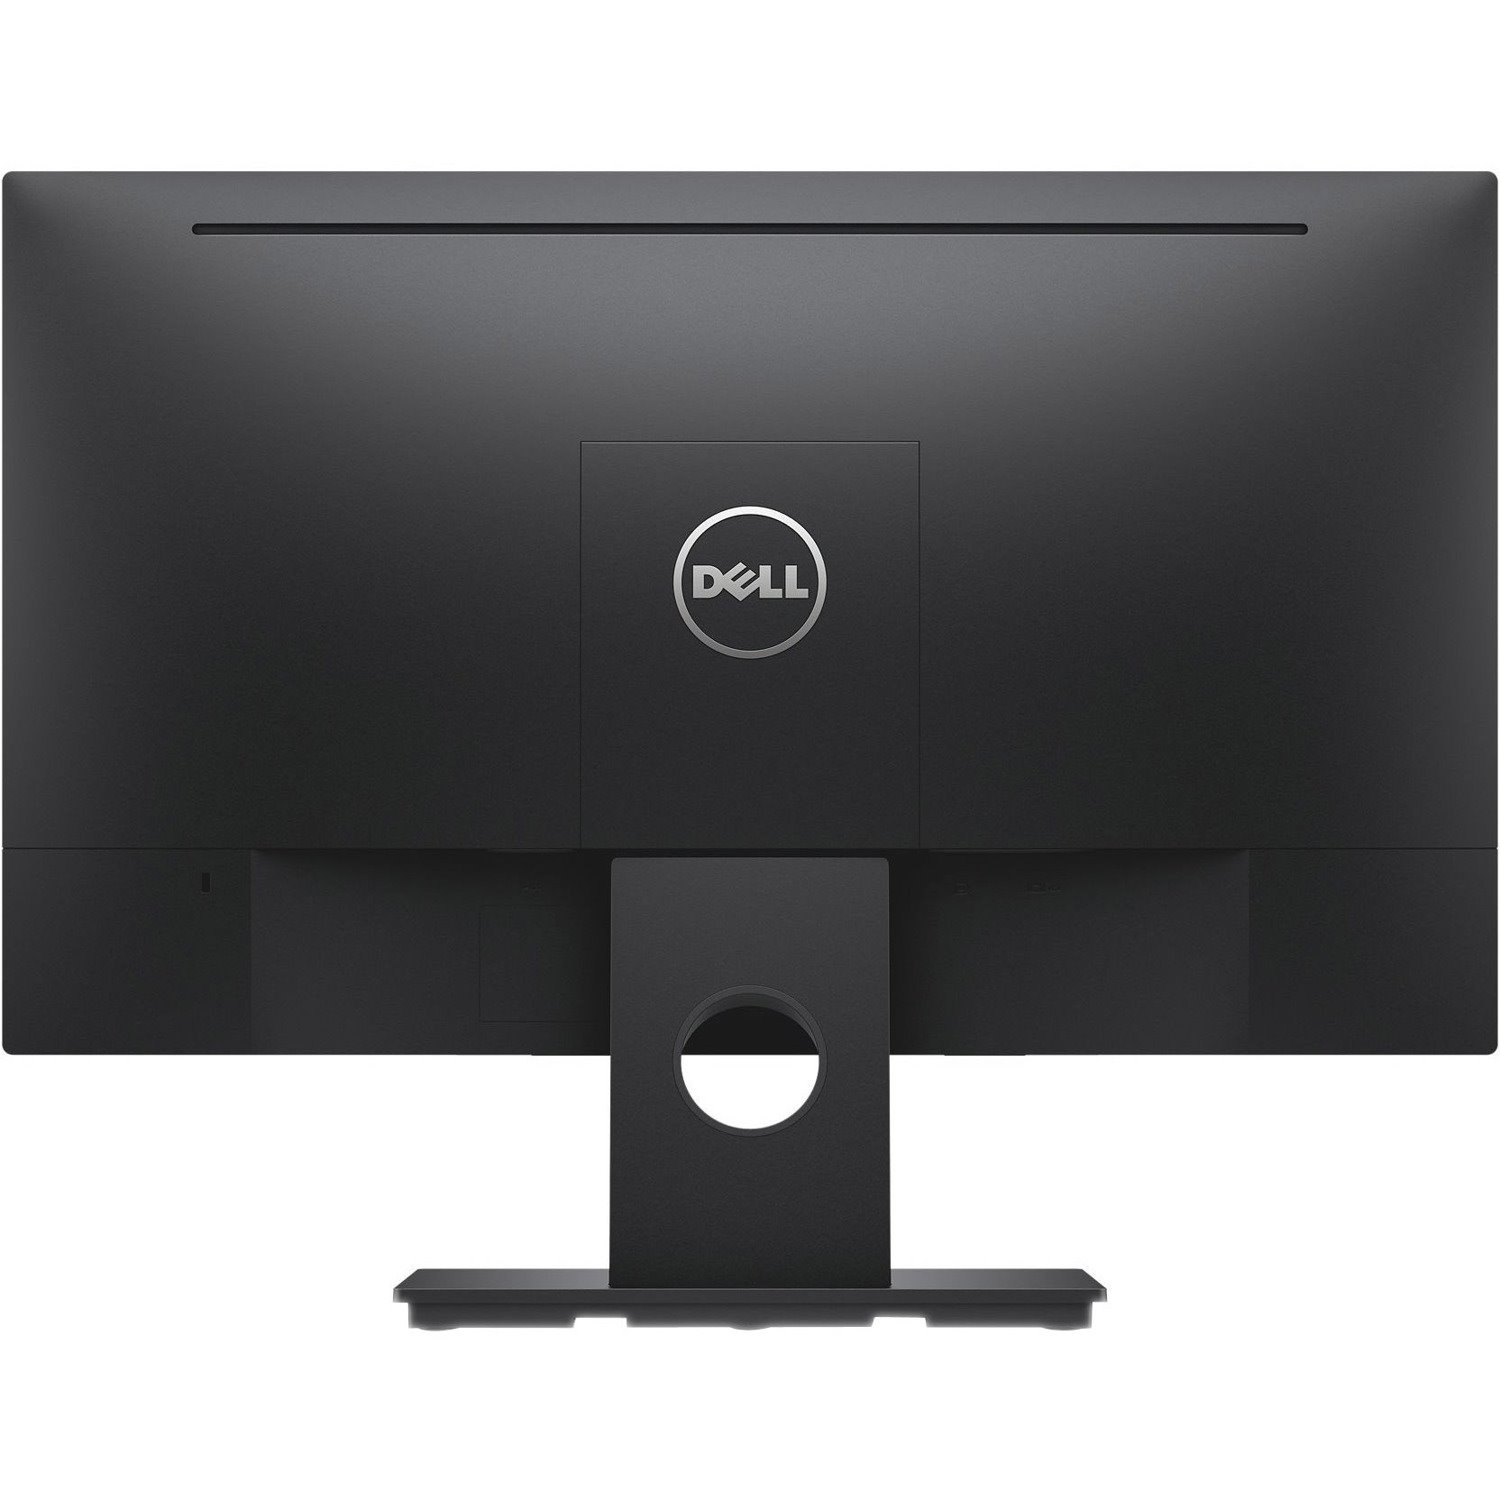 Dell E2318H Full HD LCD Monitor - 16:9 - Black